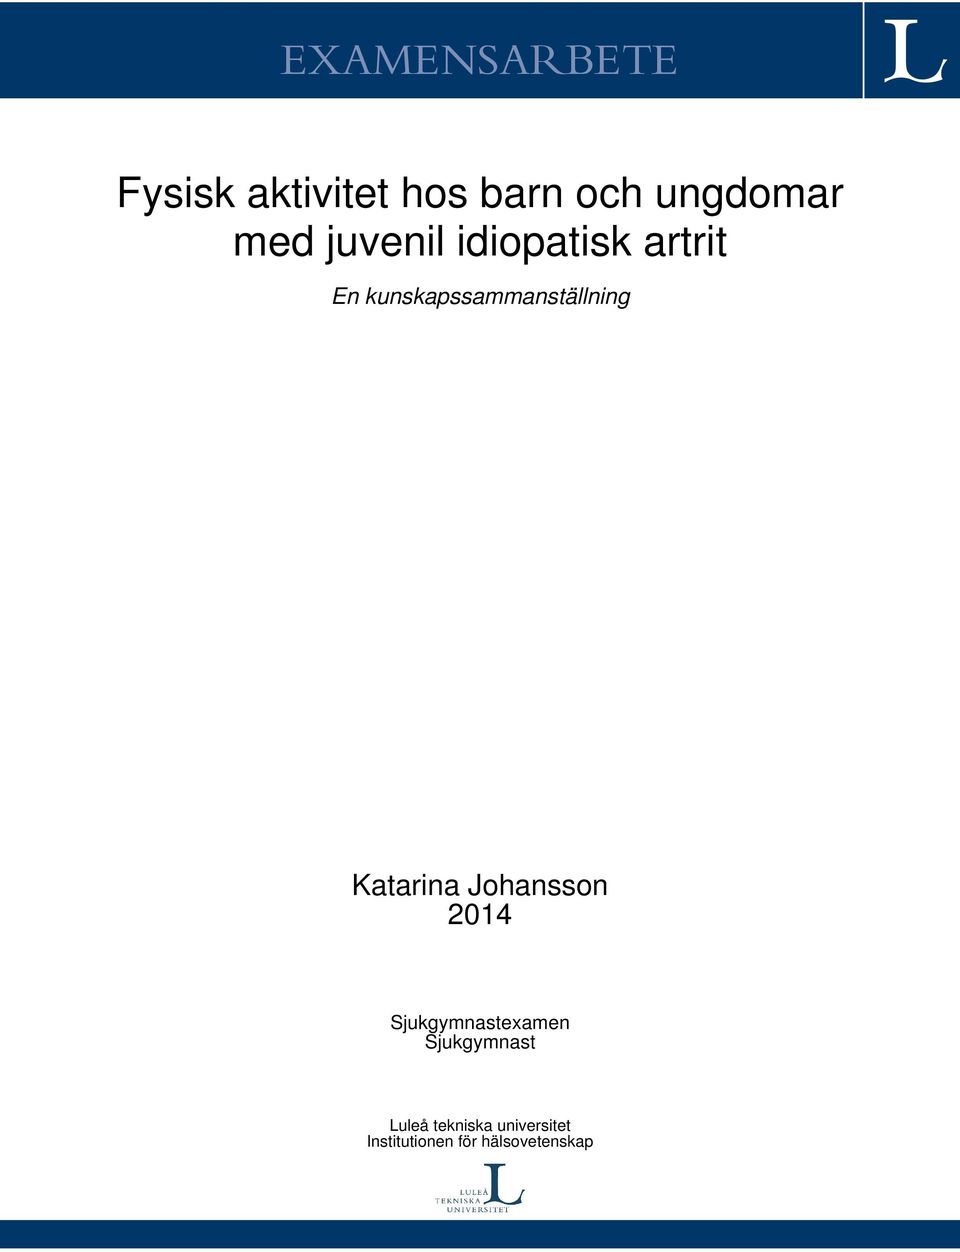 kunskapssammanställning Katarina Johansson 2014